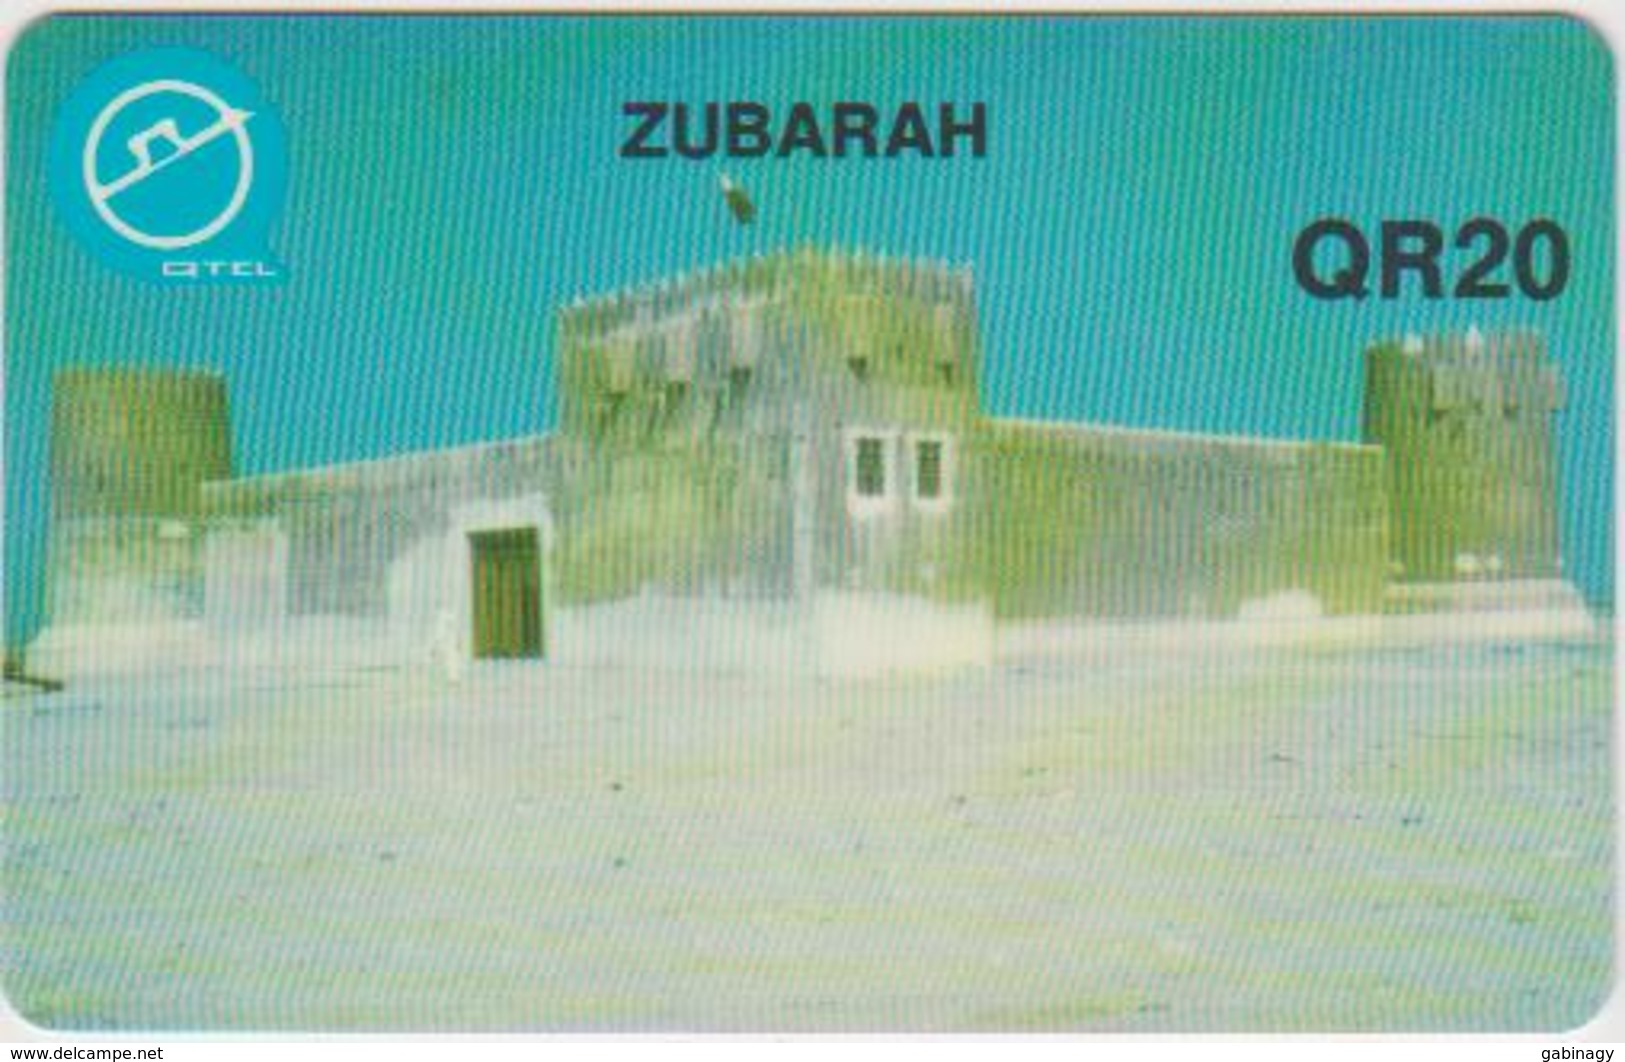 QATAR-0029 - ZUBARAH - Qatar